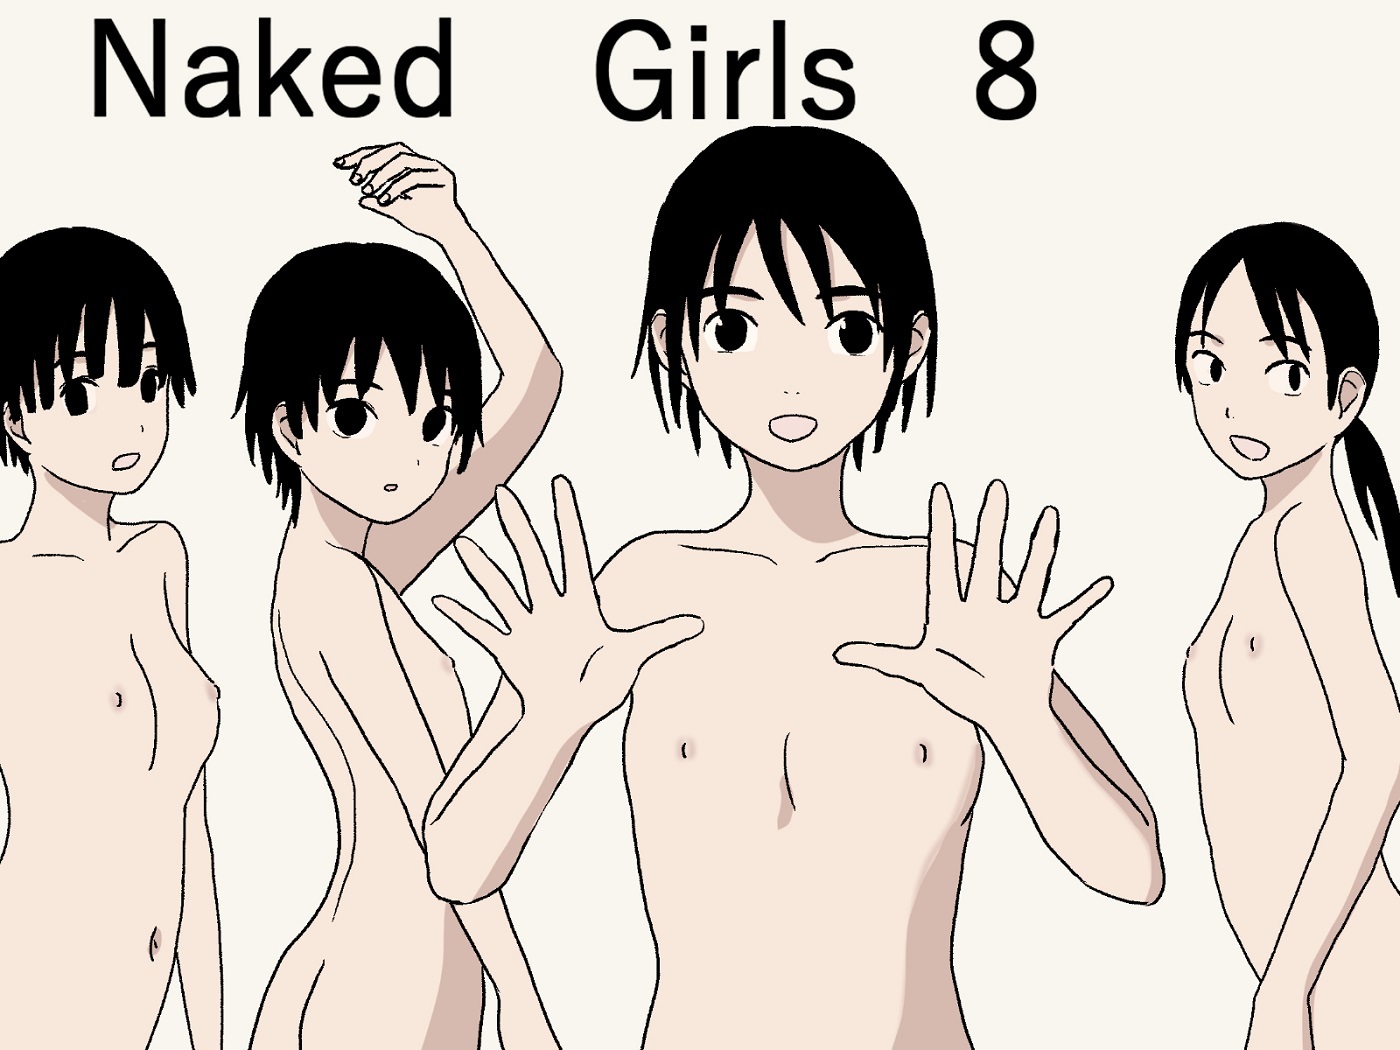 Naked Girls 8